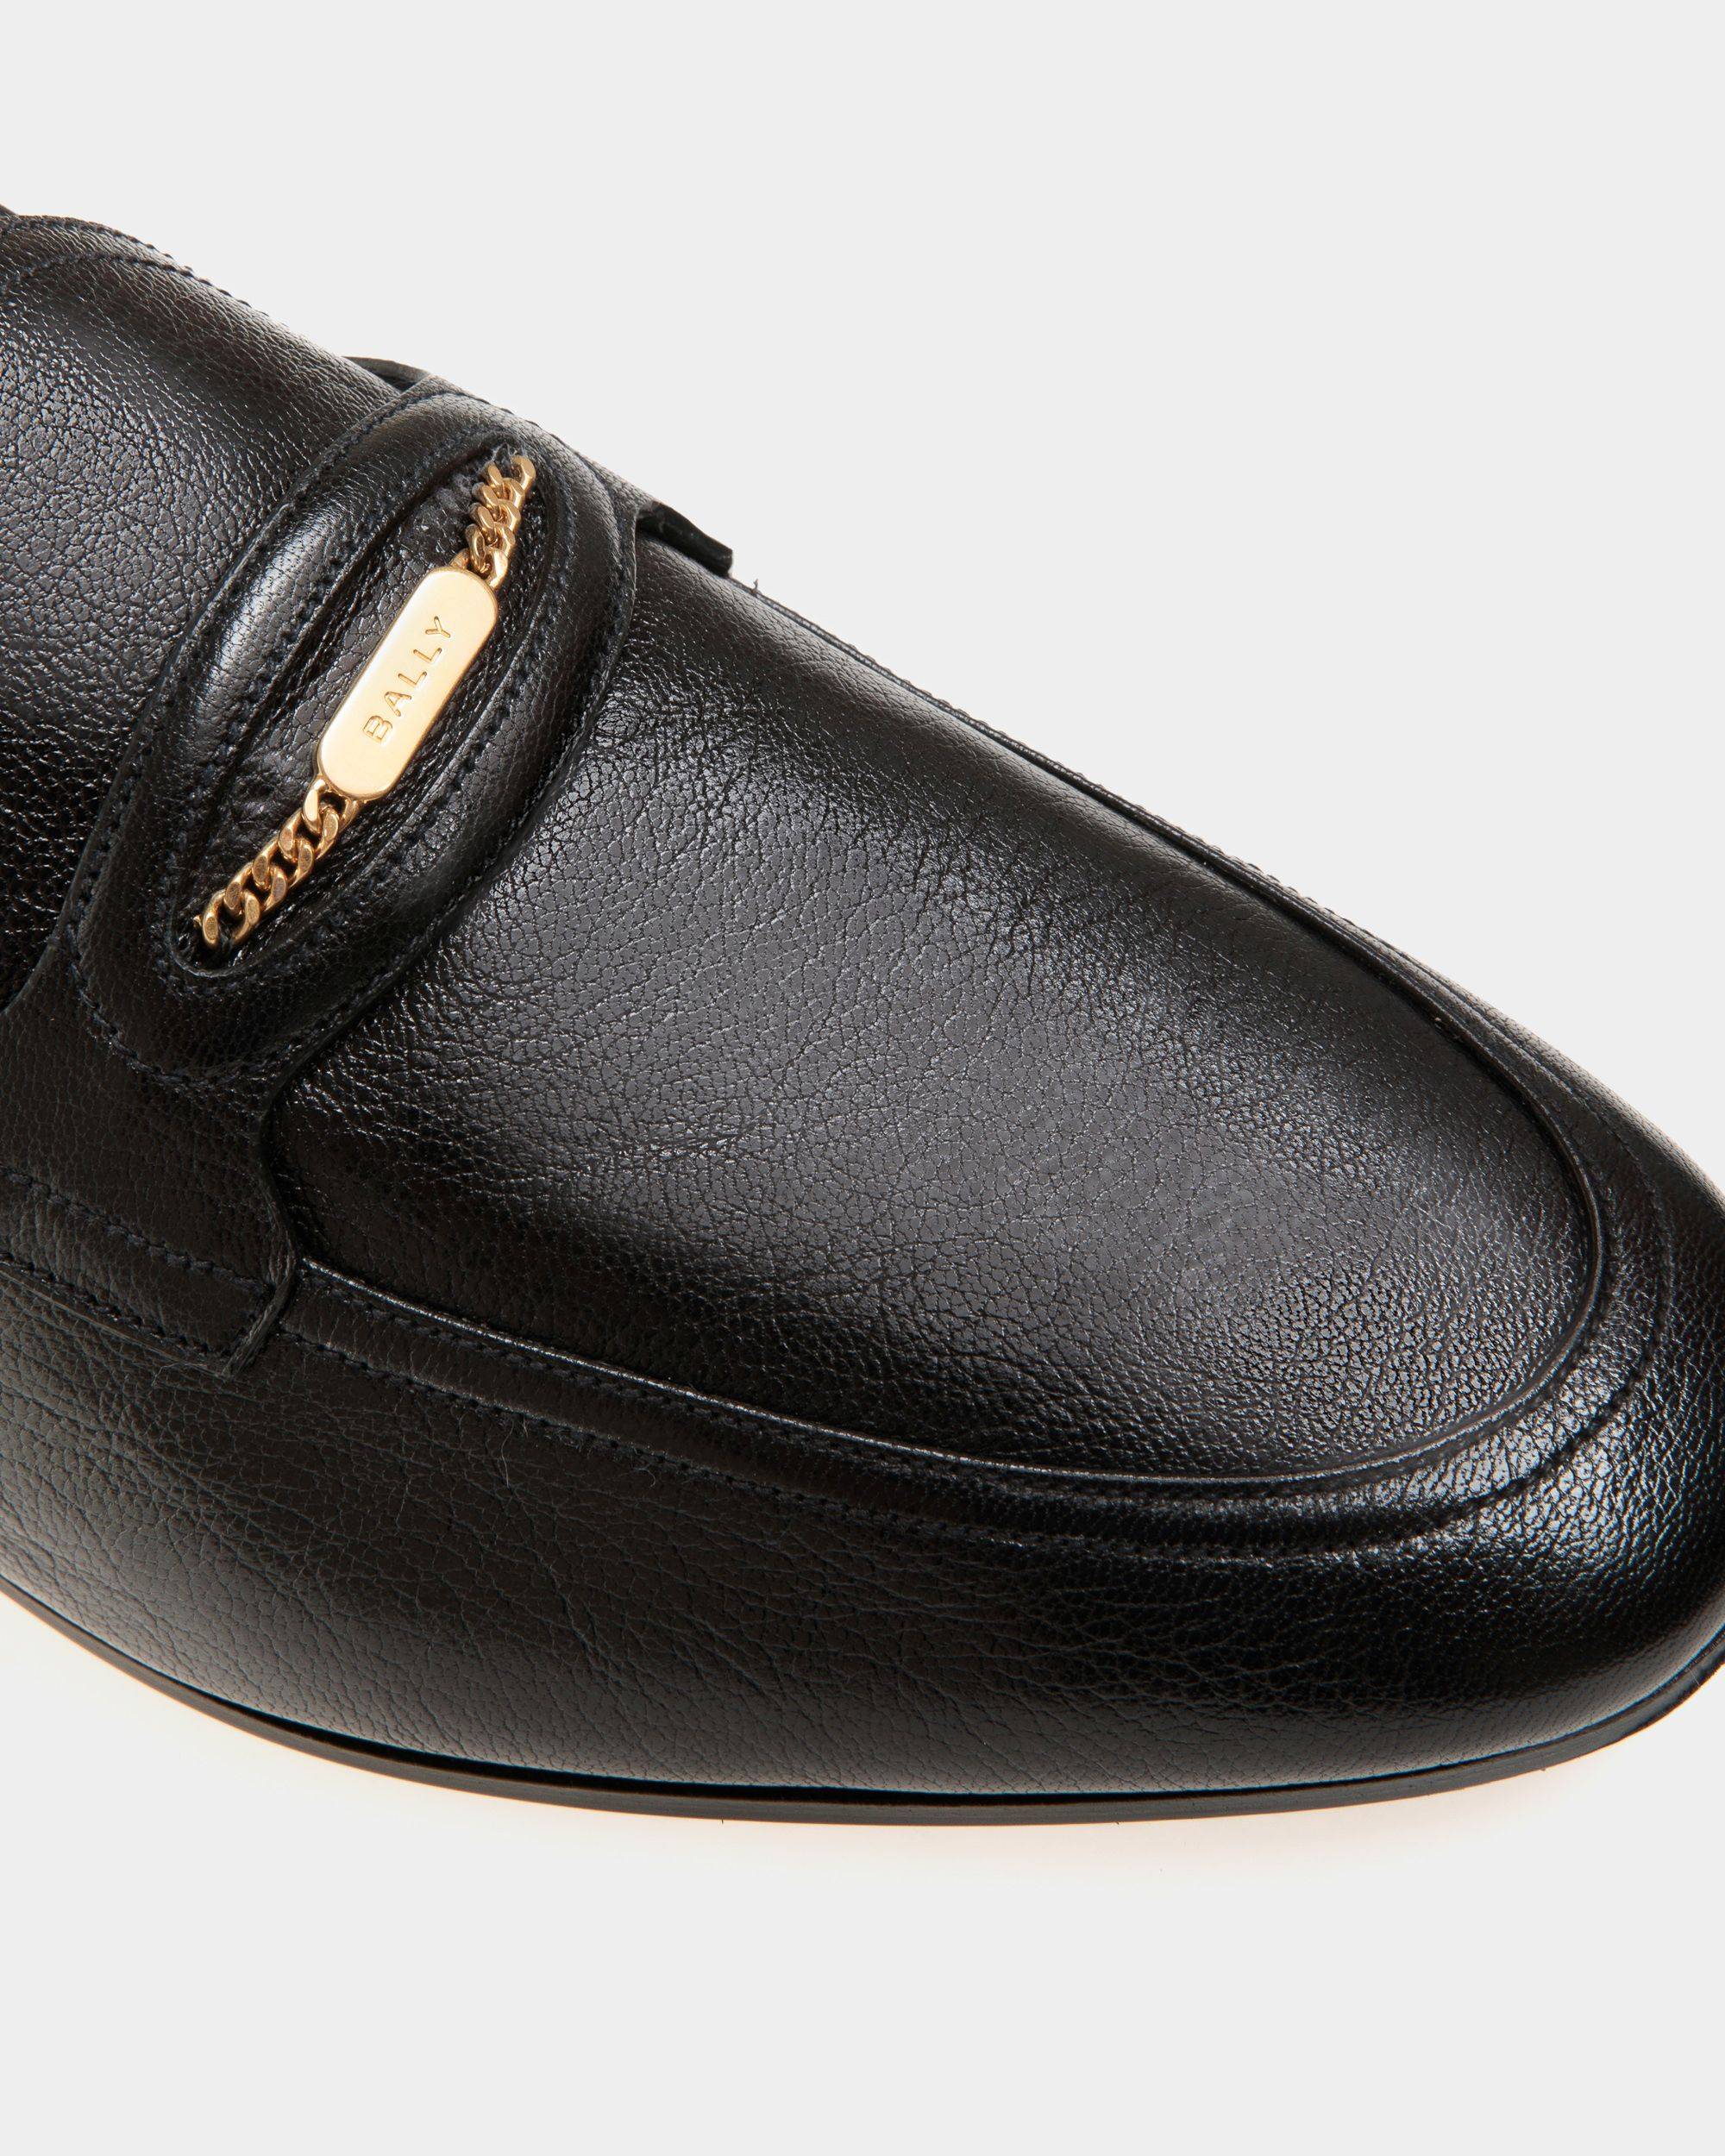 Plume | Loafers für Herren aus genarbtem Leder in Schwarz | Bally | Still Life Detail